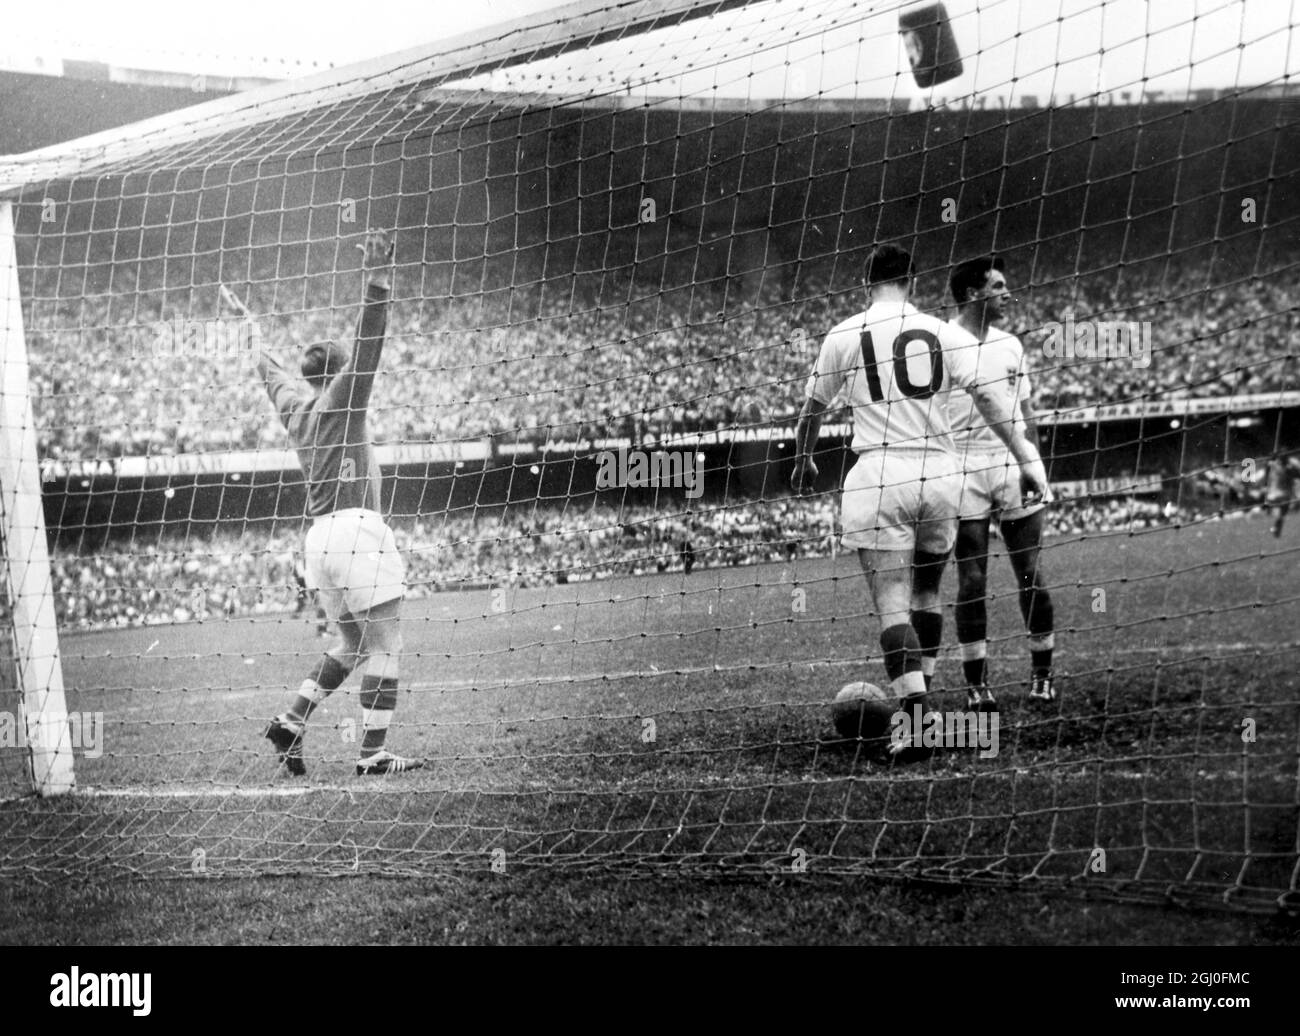 Brasilien gegen England Englands Torhüter Hopkinson, links wirft seine Arme nach Brasilien, nachdem Brasilien beim internationalen Spiel in Rio ihr erstes Tor erzielt hat. Englands Johnny Haynes (Nr. 10) wird gesehen, wie er den Ball aus dem Netz zurückholen kann. Brasilien gewann das Spiel mit zwei Toren auf Null. Mai 1957 Stockfoto